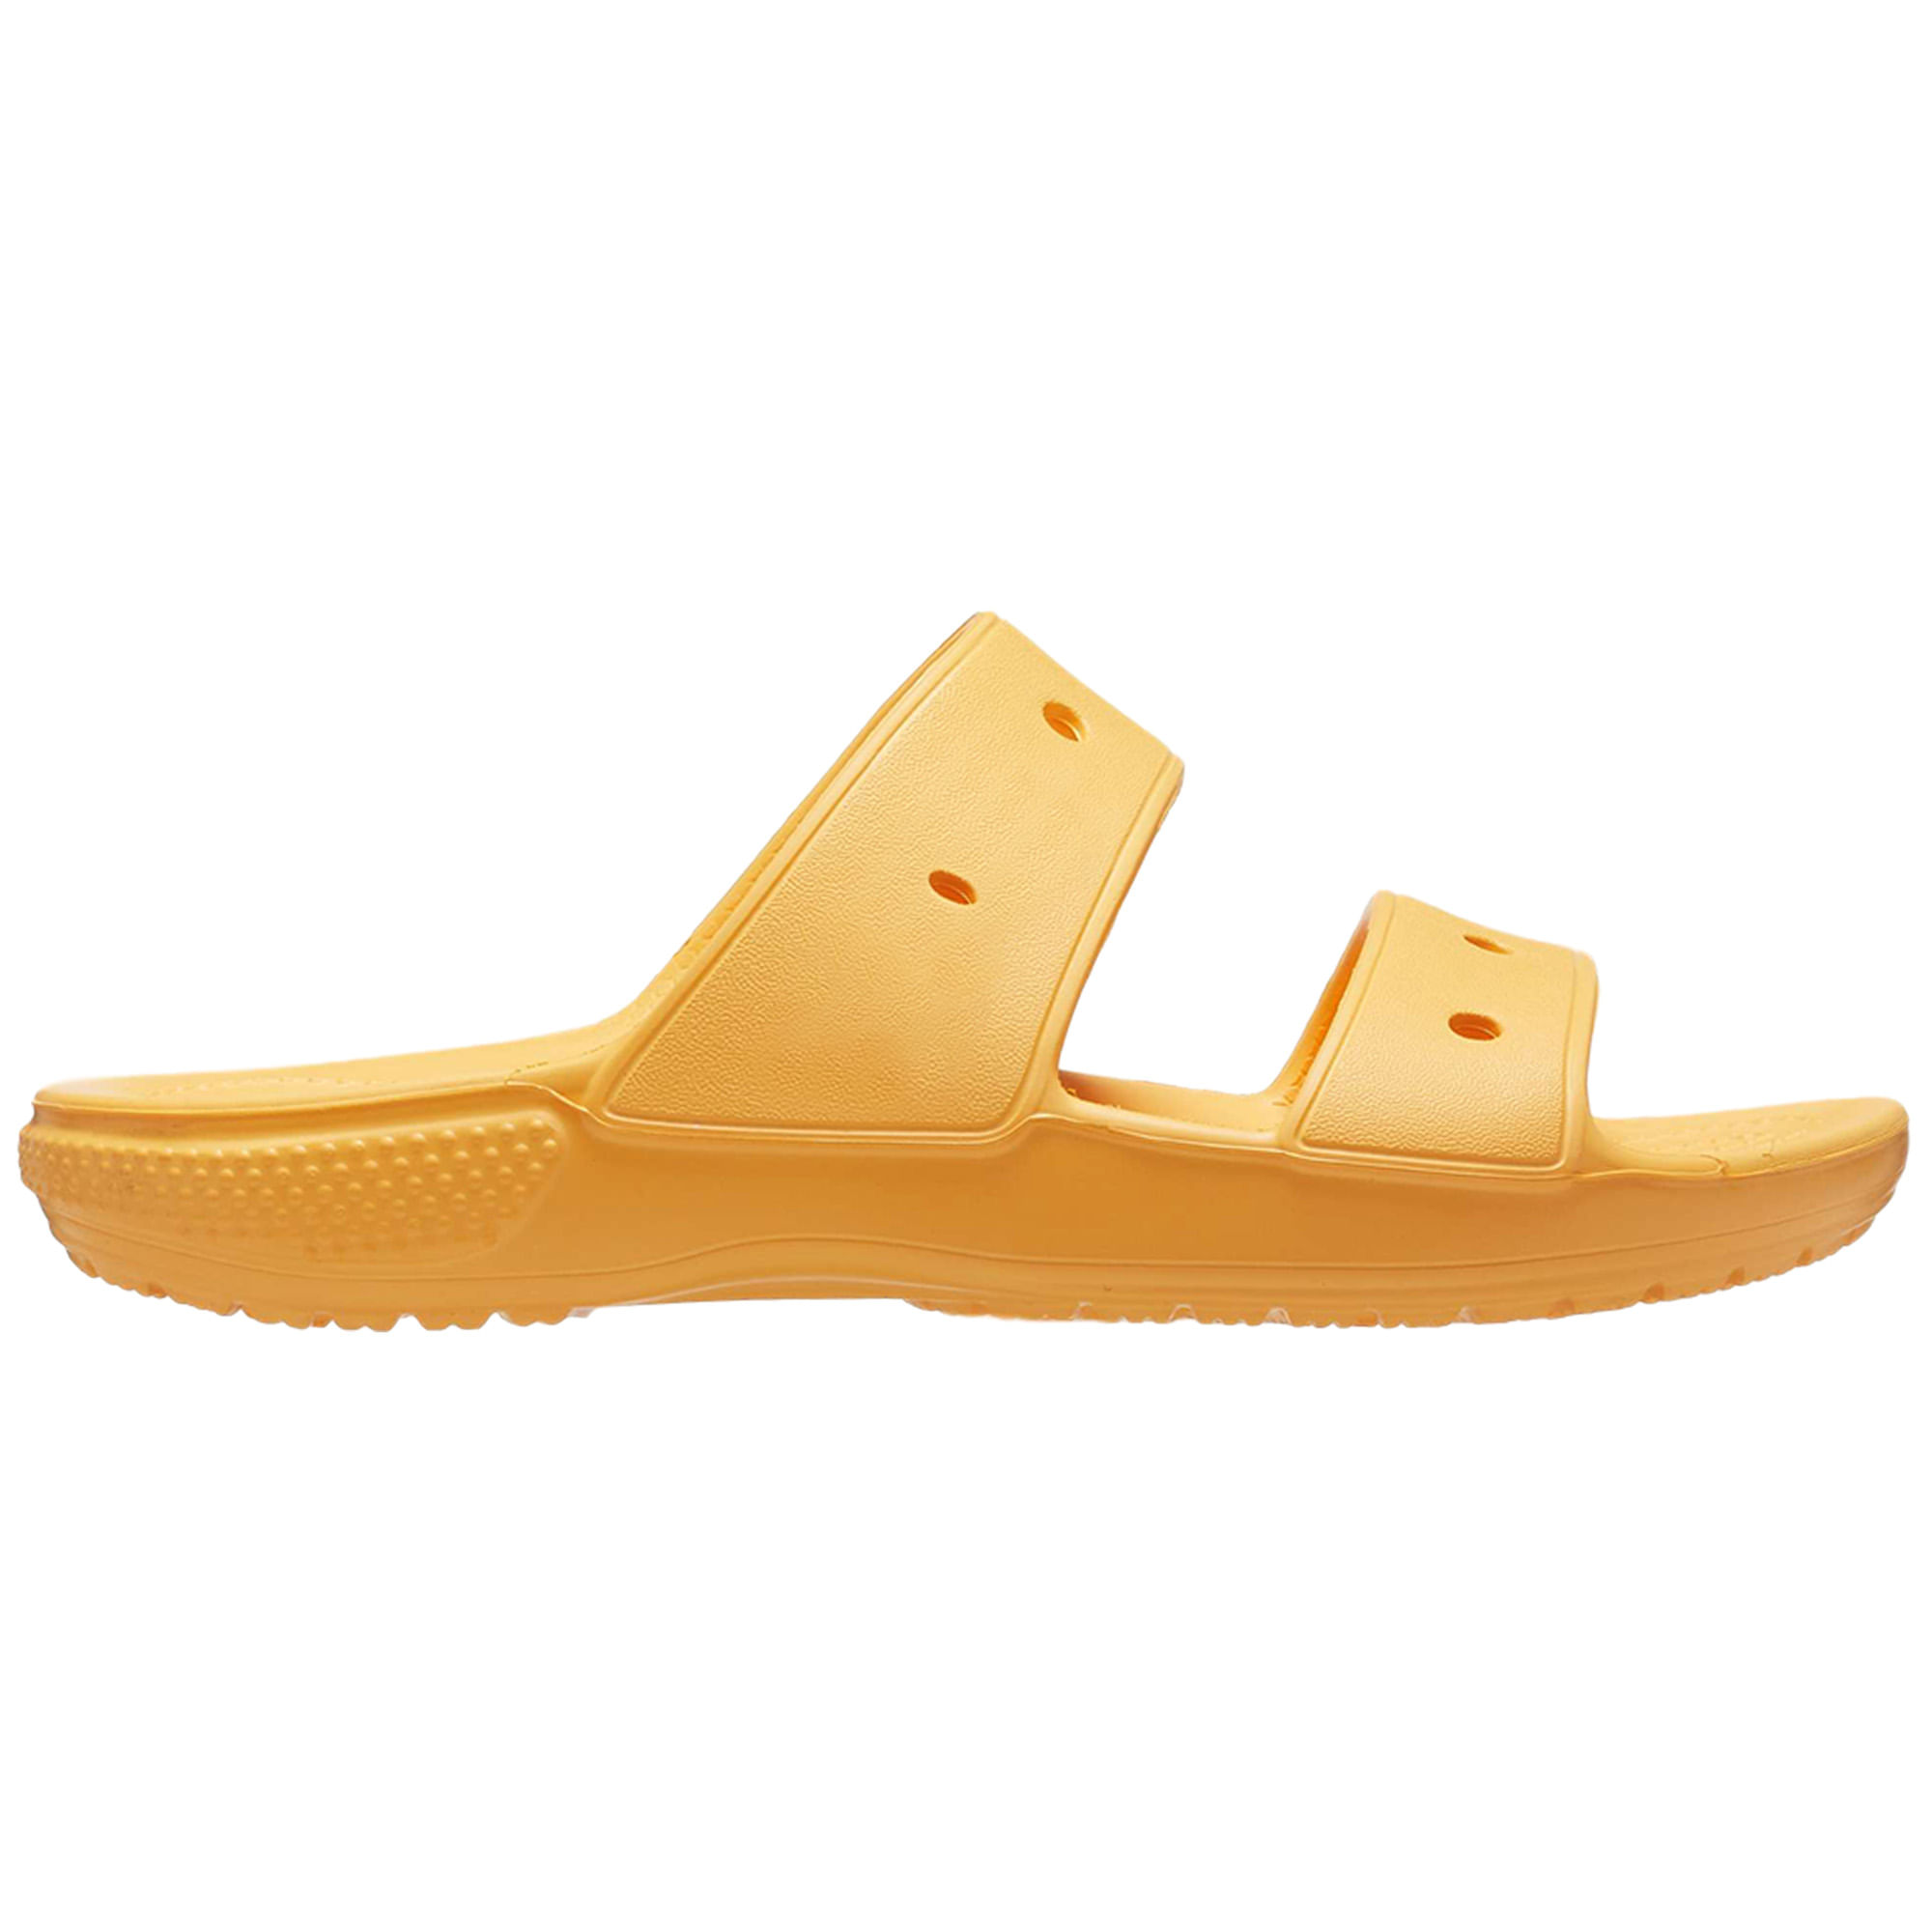 Classic Sandal | CROCS - Crocs